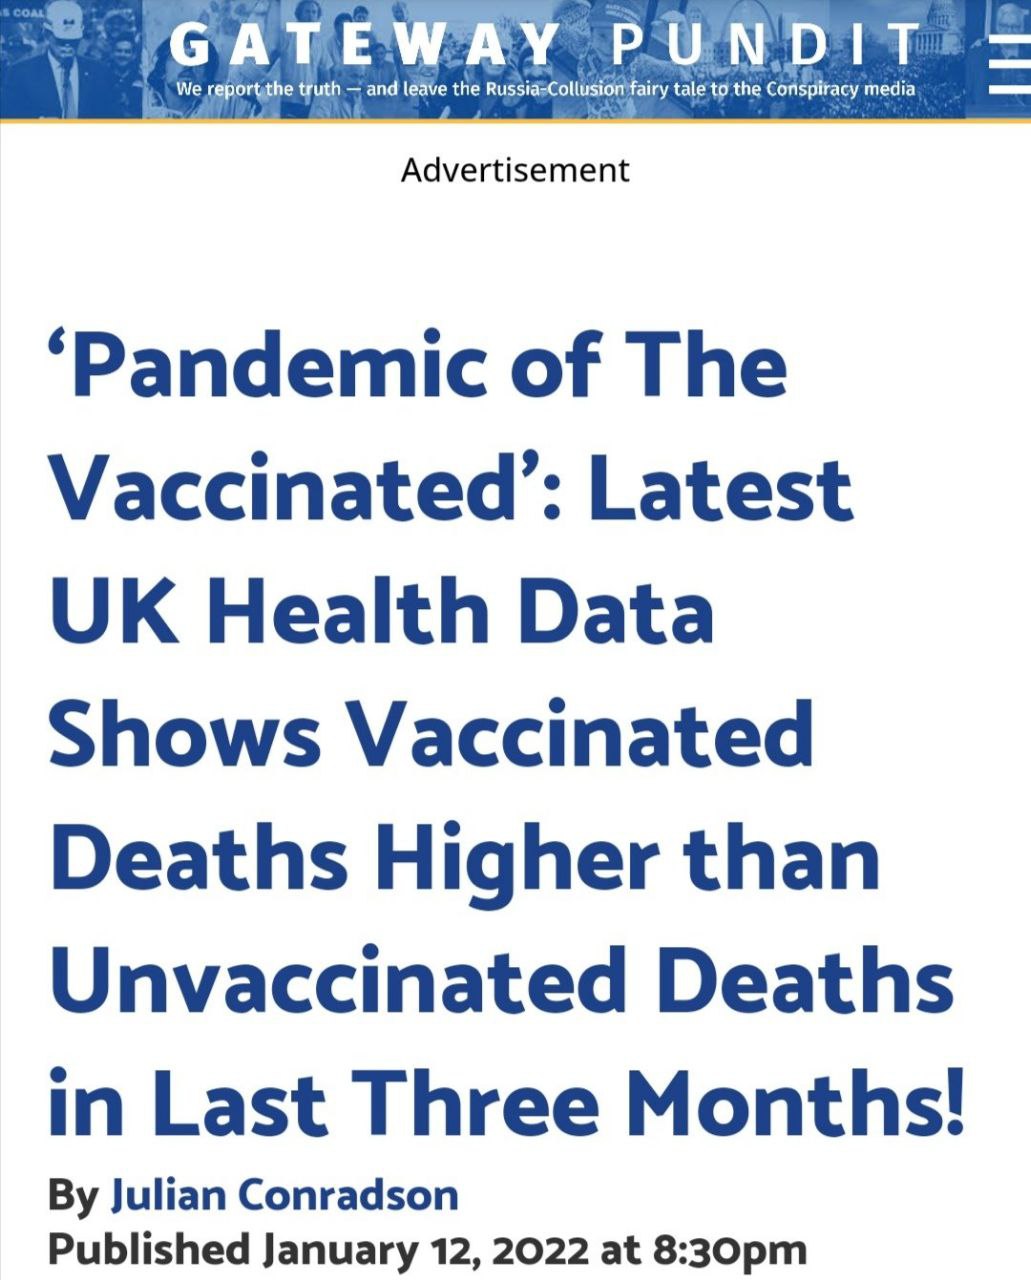 Die britische Regierung räumt ein, dass Impfstoffe das natürliche Immunsystem derjenigen geschädigt haben, die doppelt geimpft wurden…!